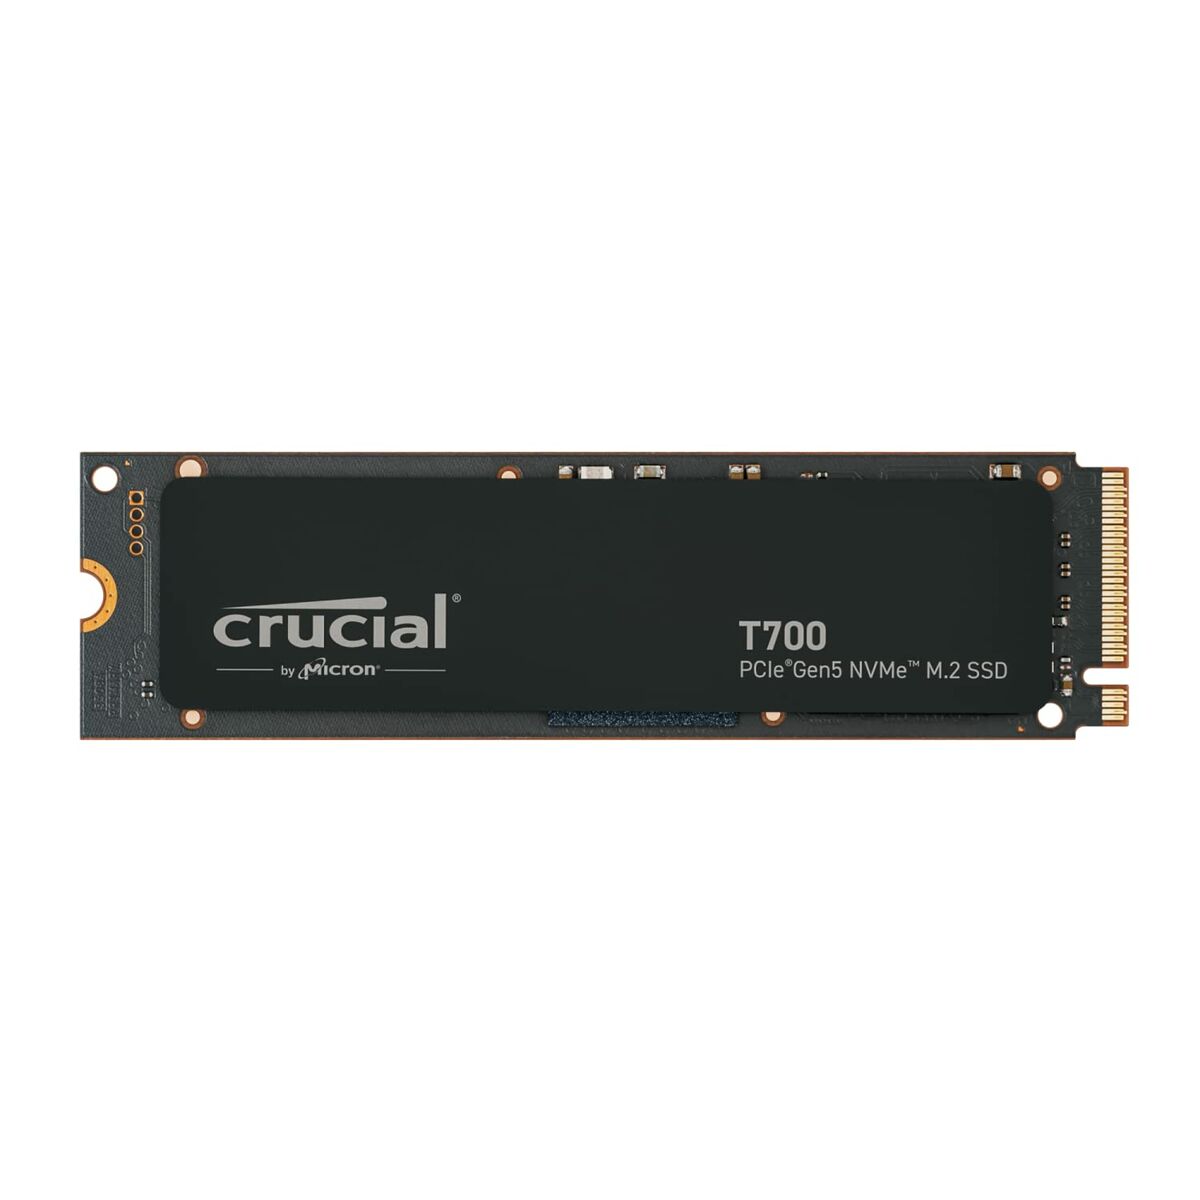 Osta tuote Kovalevy Crucial 2 TB SSD verkkokaupastamme Korhone: Tietokoneet & Elektroniikka 10% alennuksella koodilla KORHONE